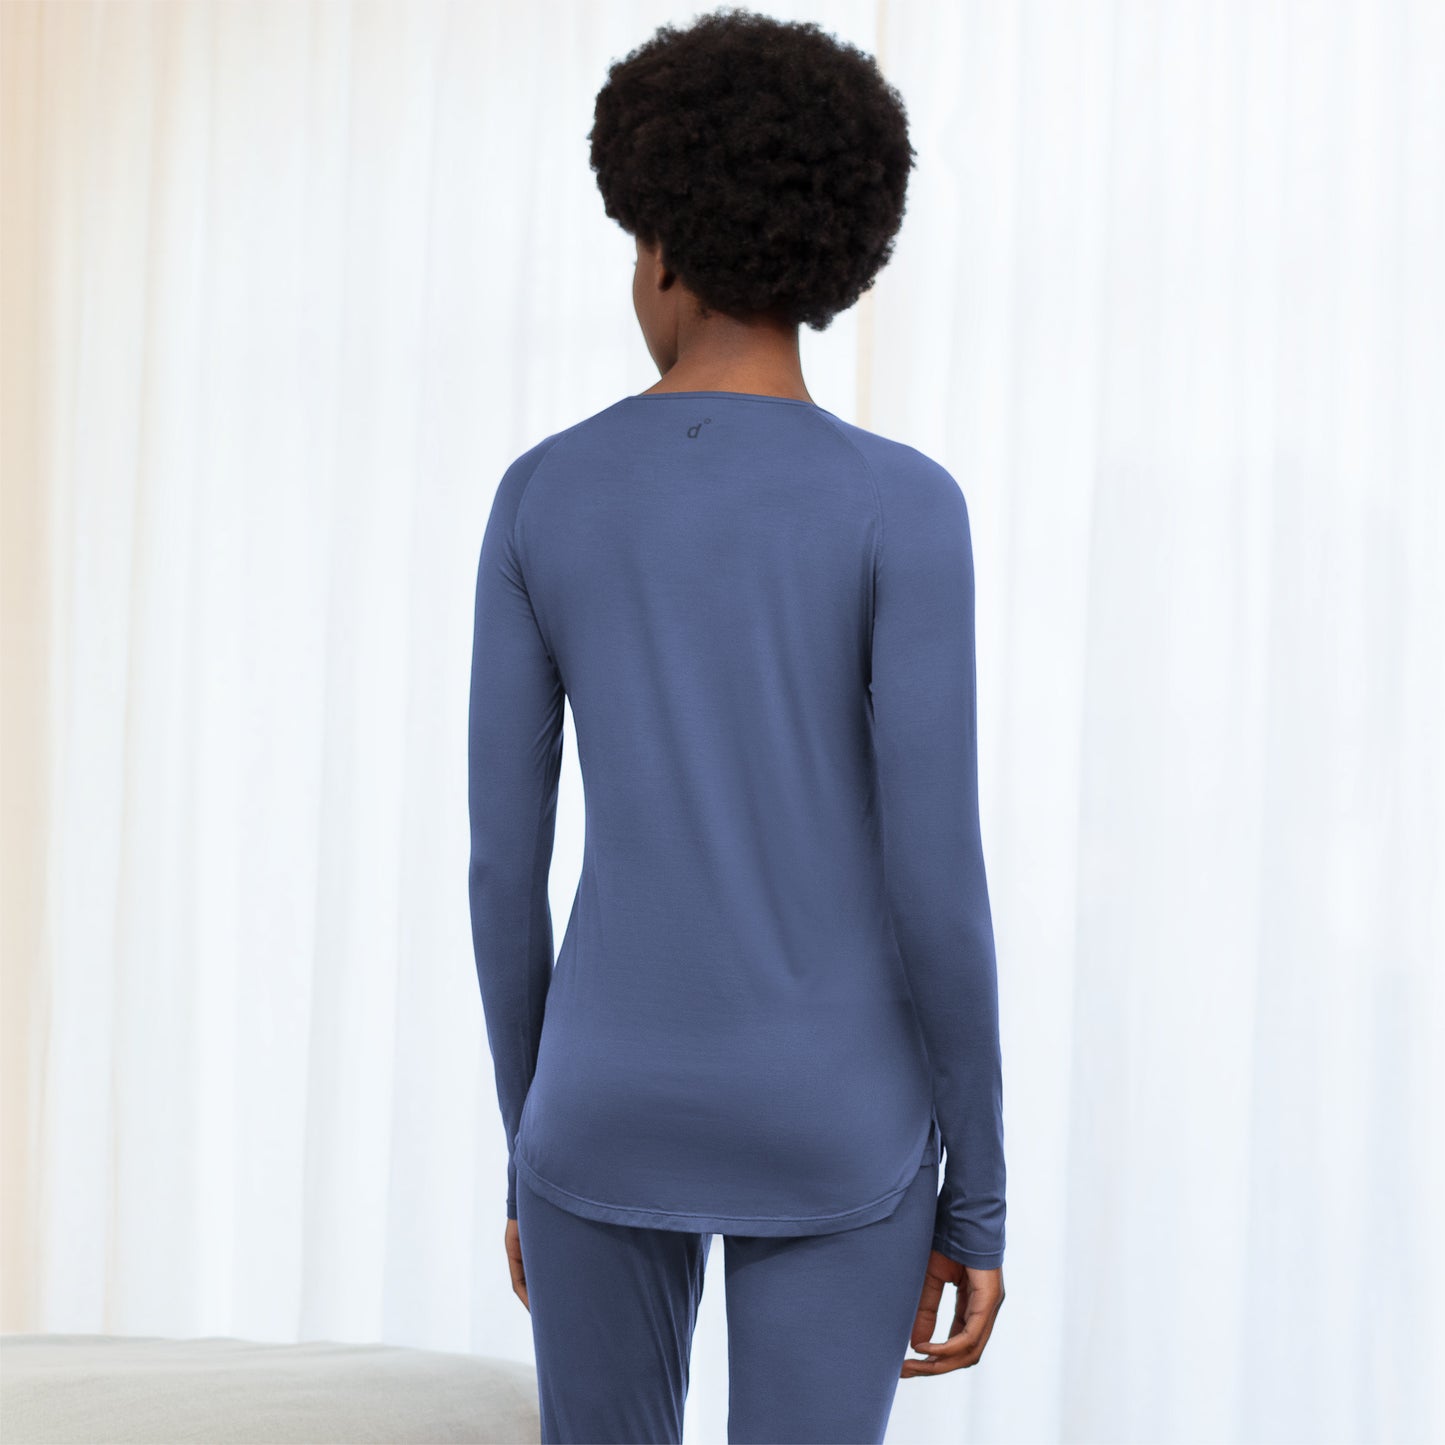 Cooling nightwear for women || Coastal blue